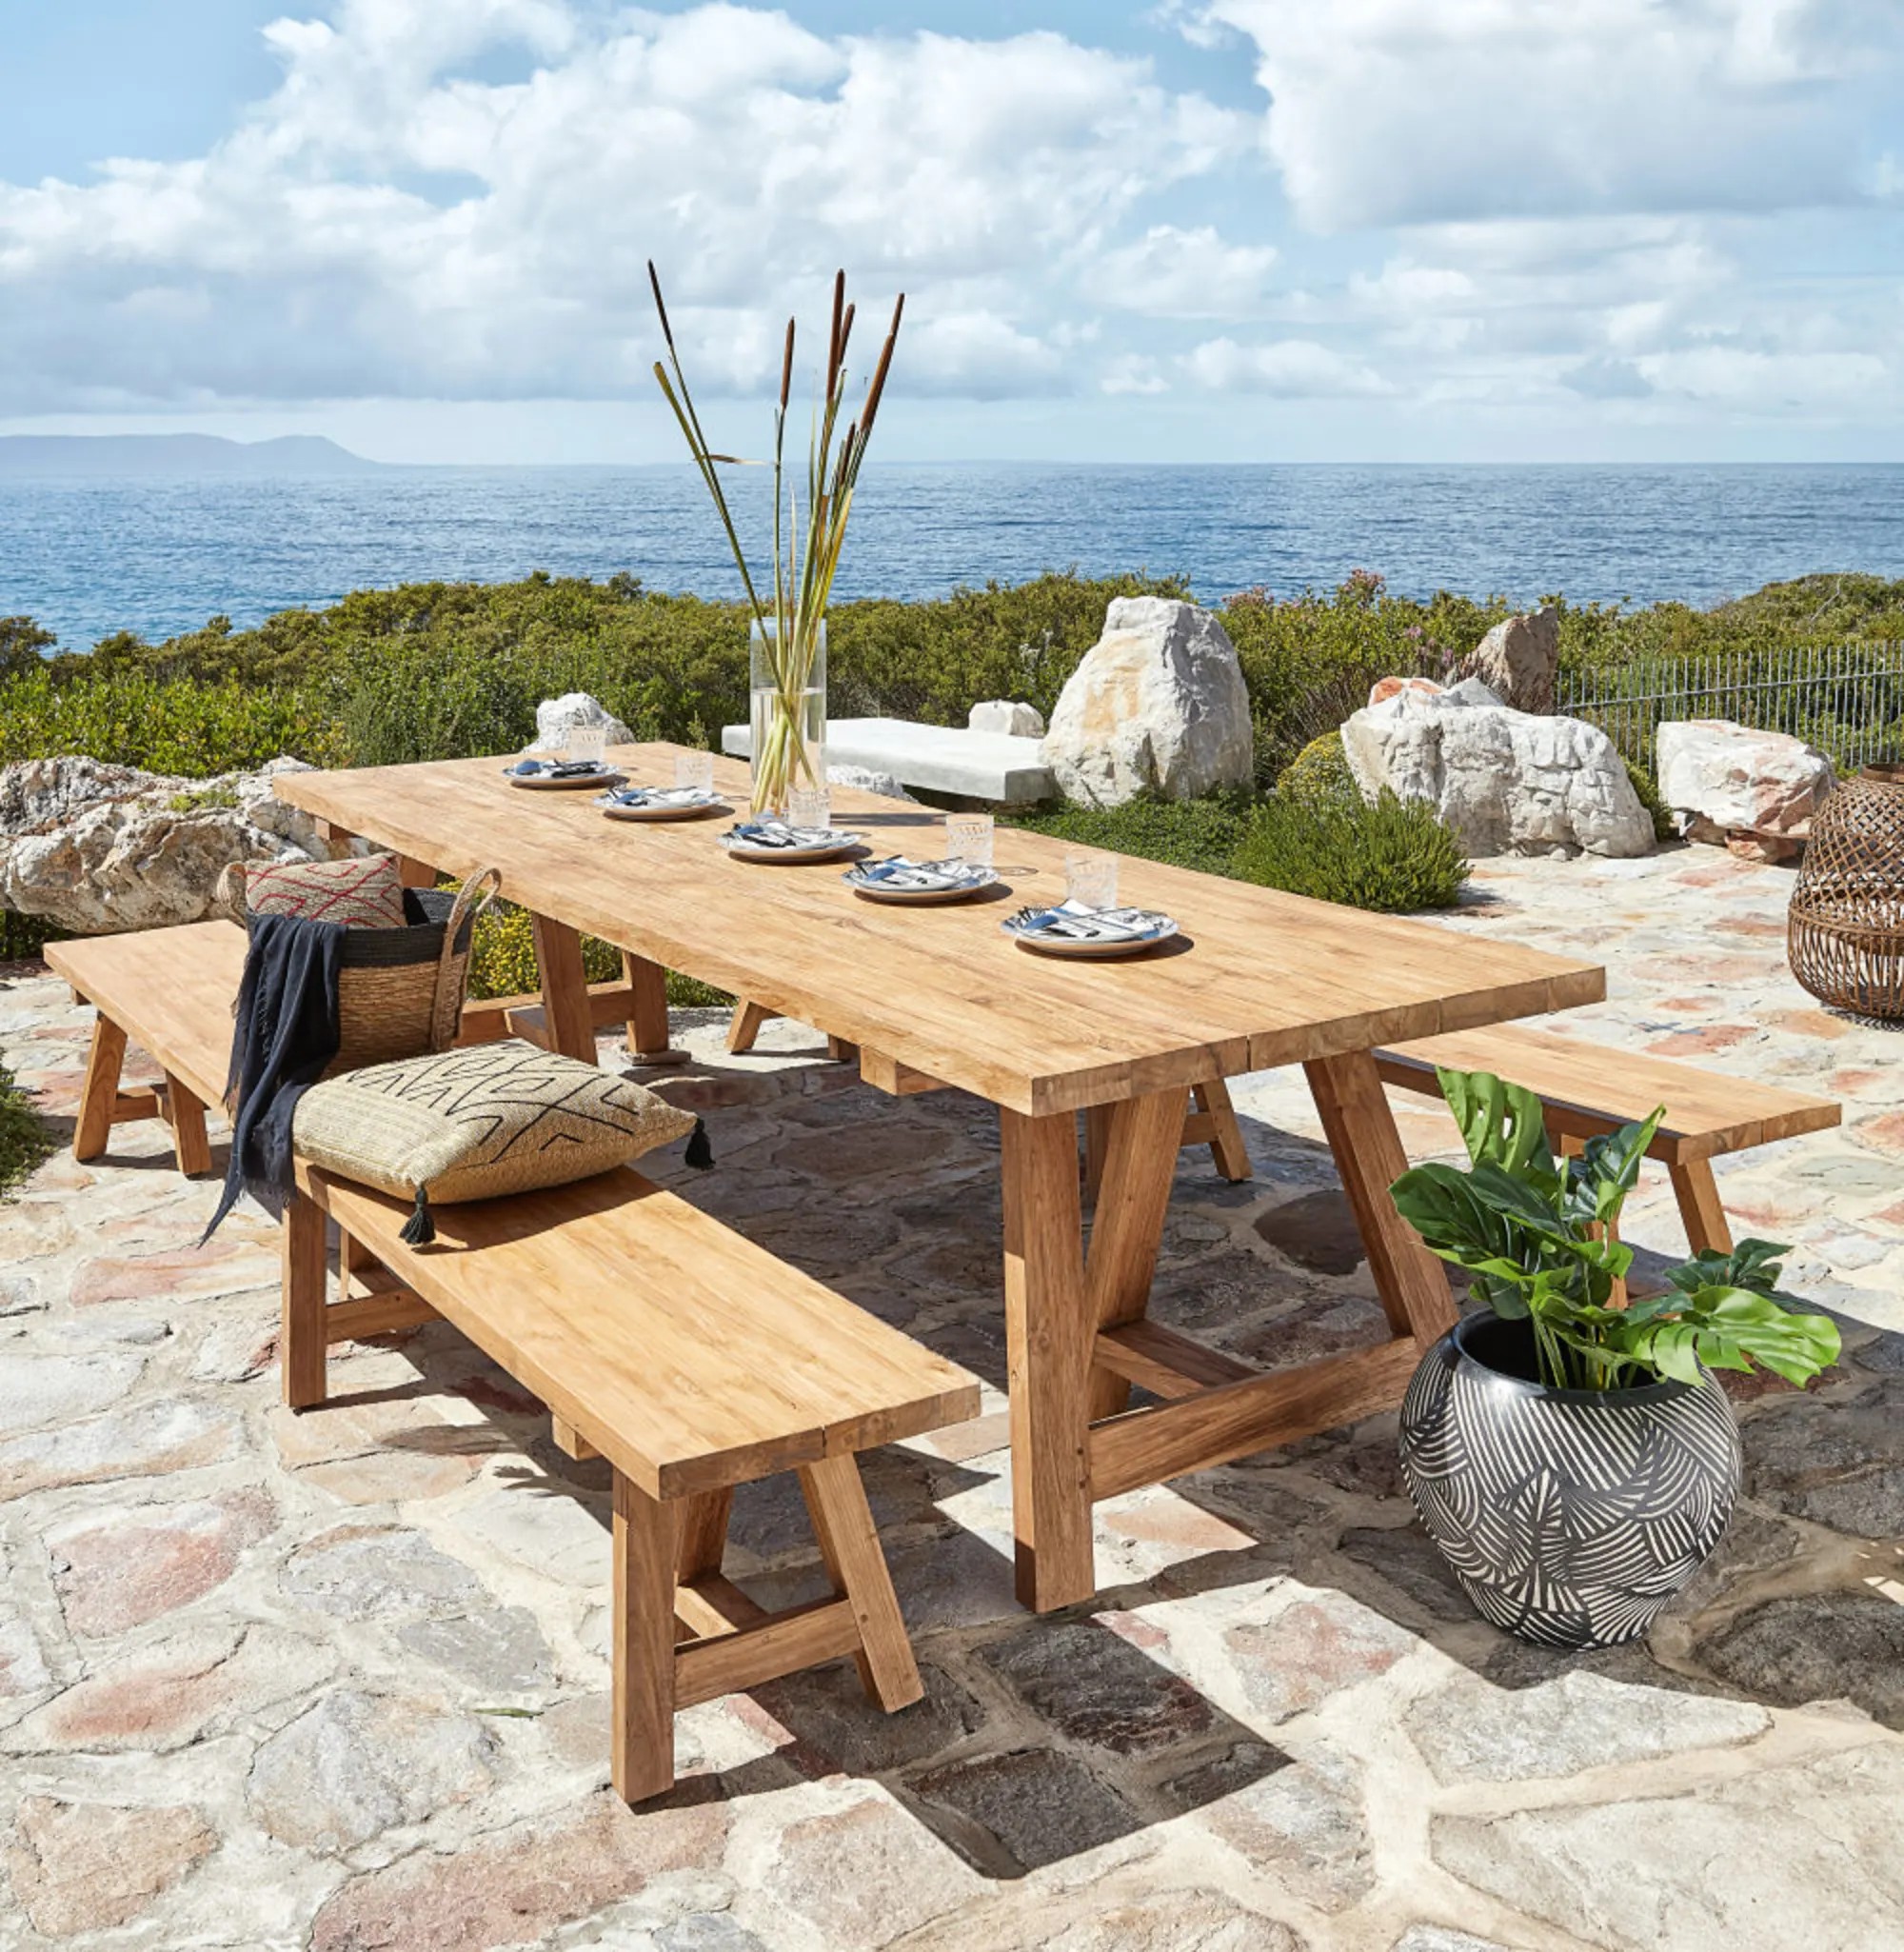 Table de jardin en bois : l'élégance naturelle pour votre terrasse